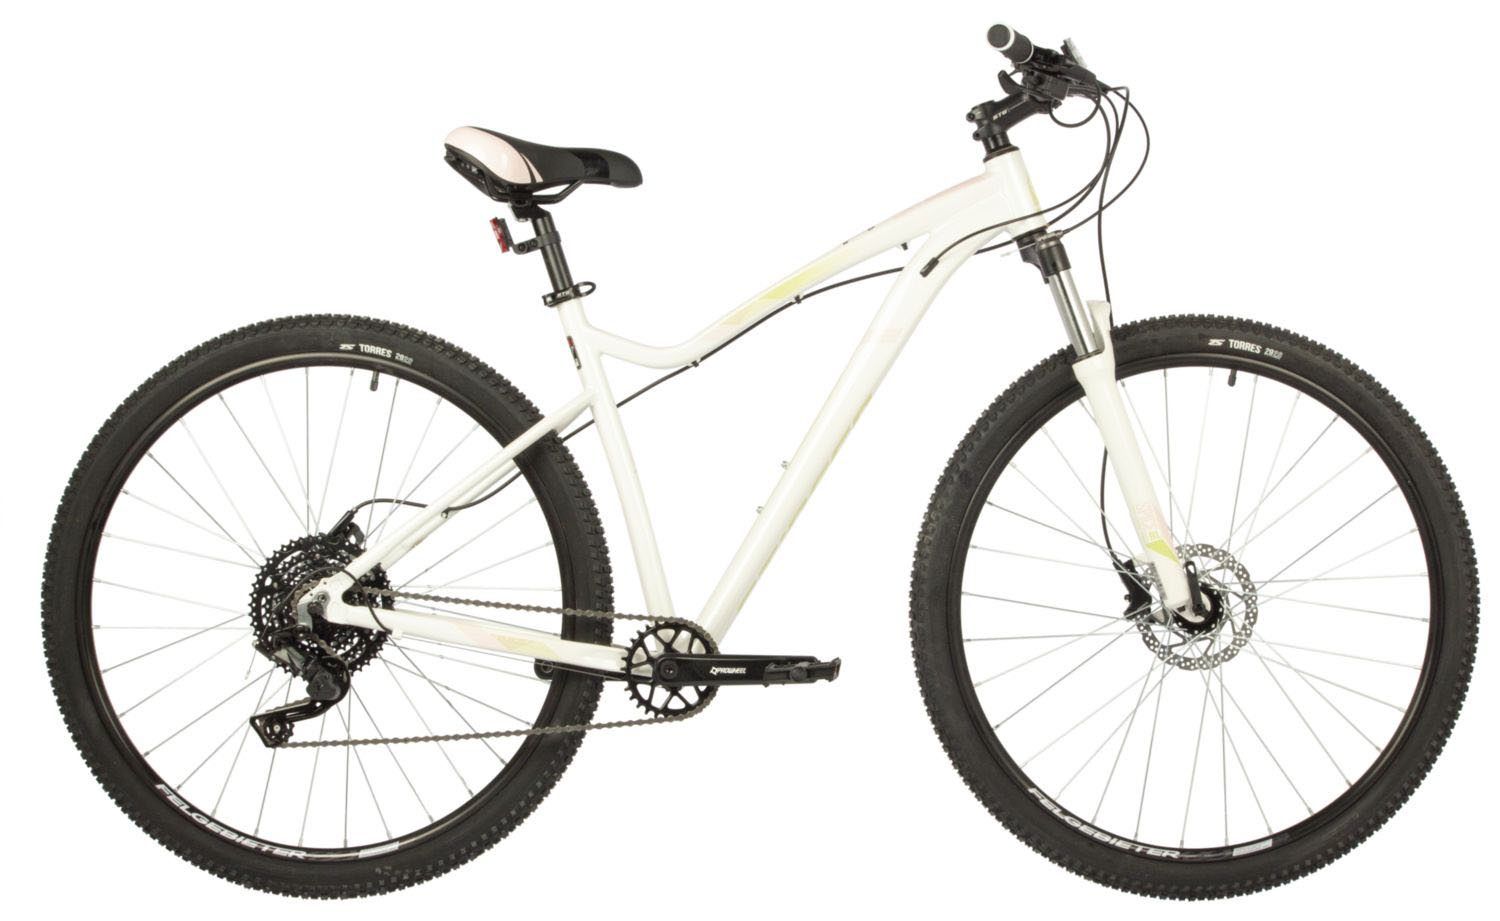  Отзывы о Горном велосипеде Stinger Vega Pro 29 2021